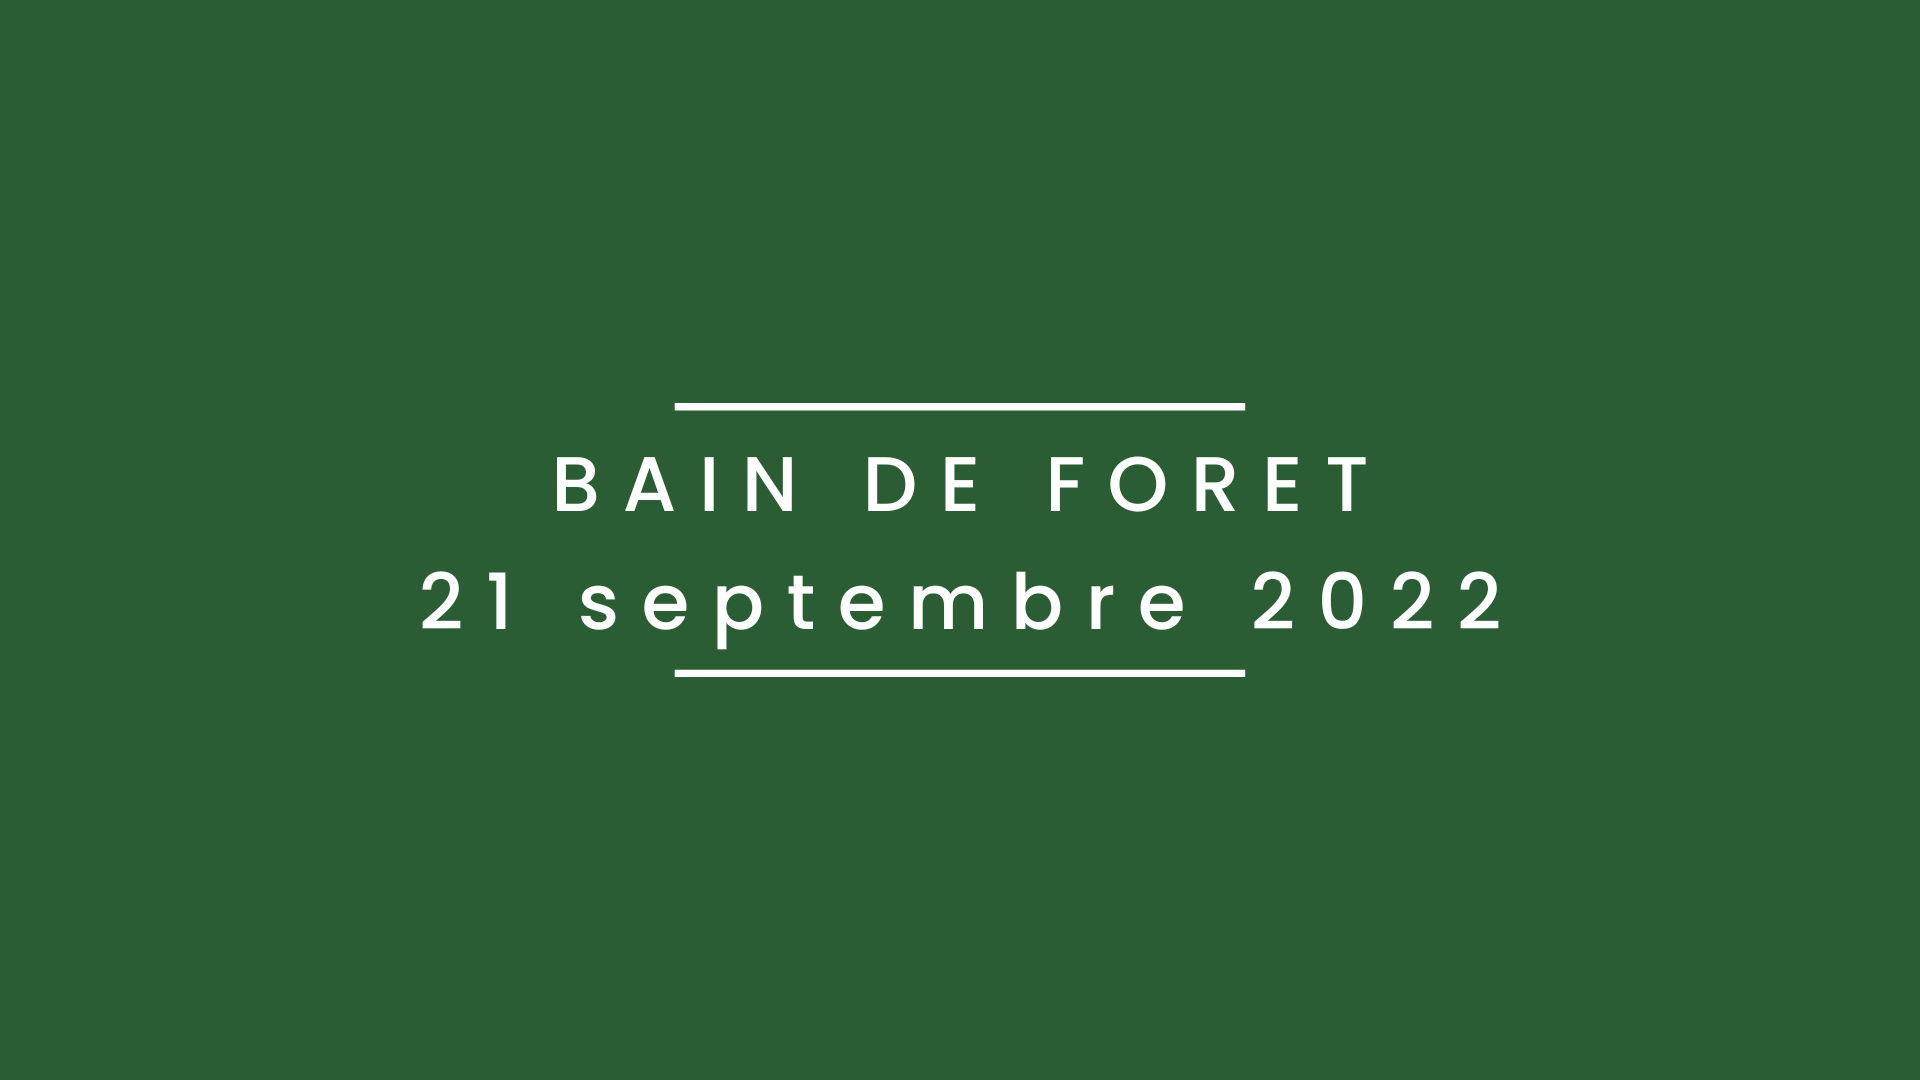 Bain de forêt 21 septembre 2022